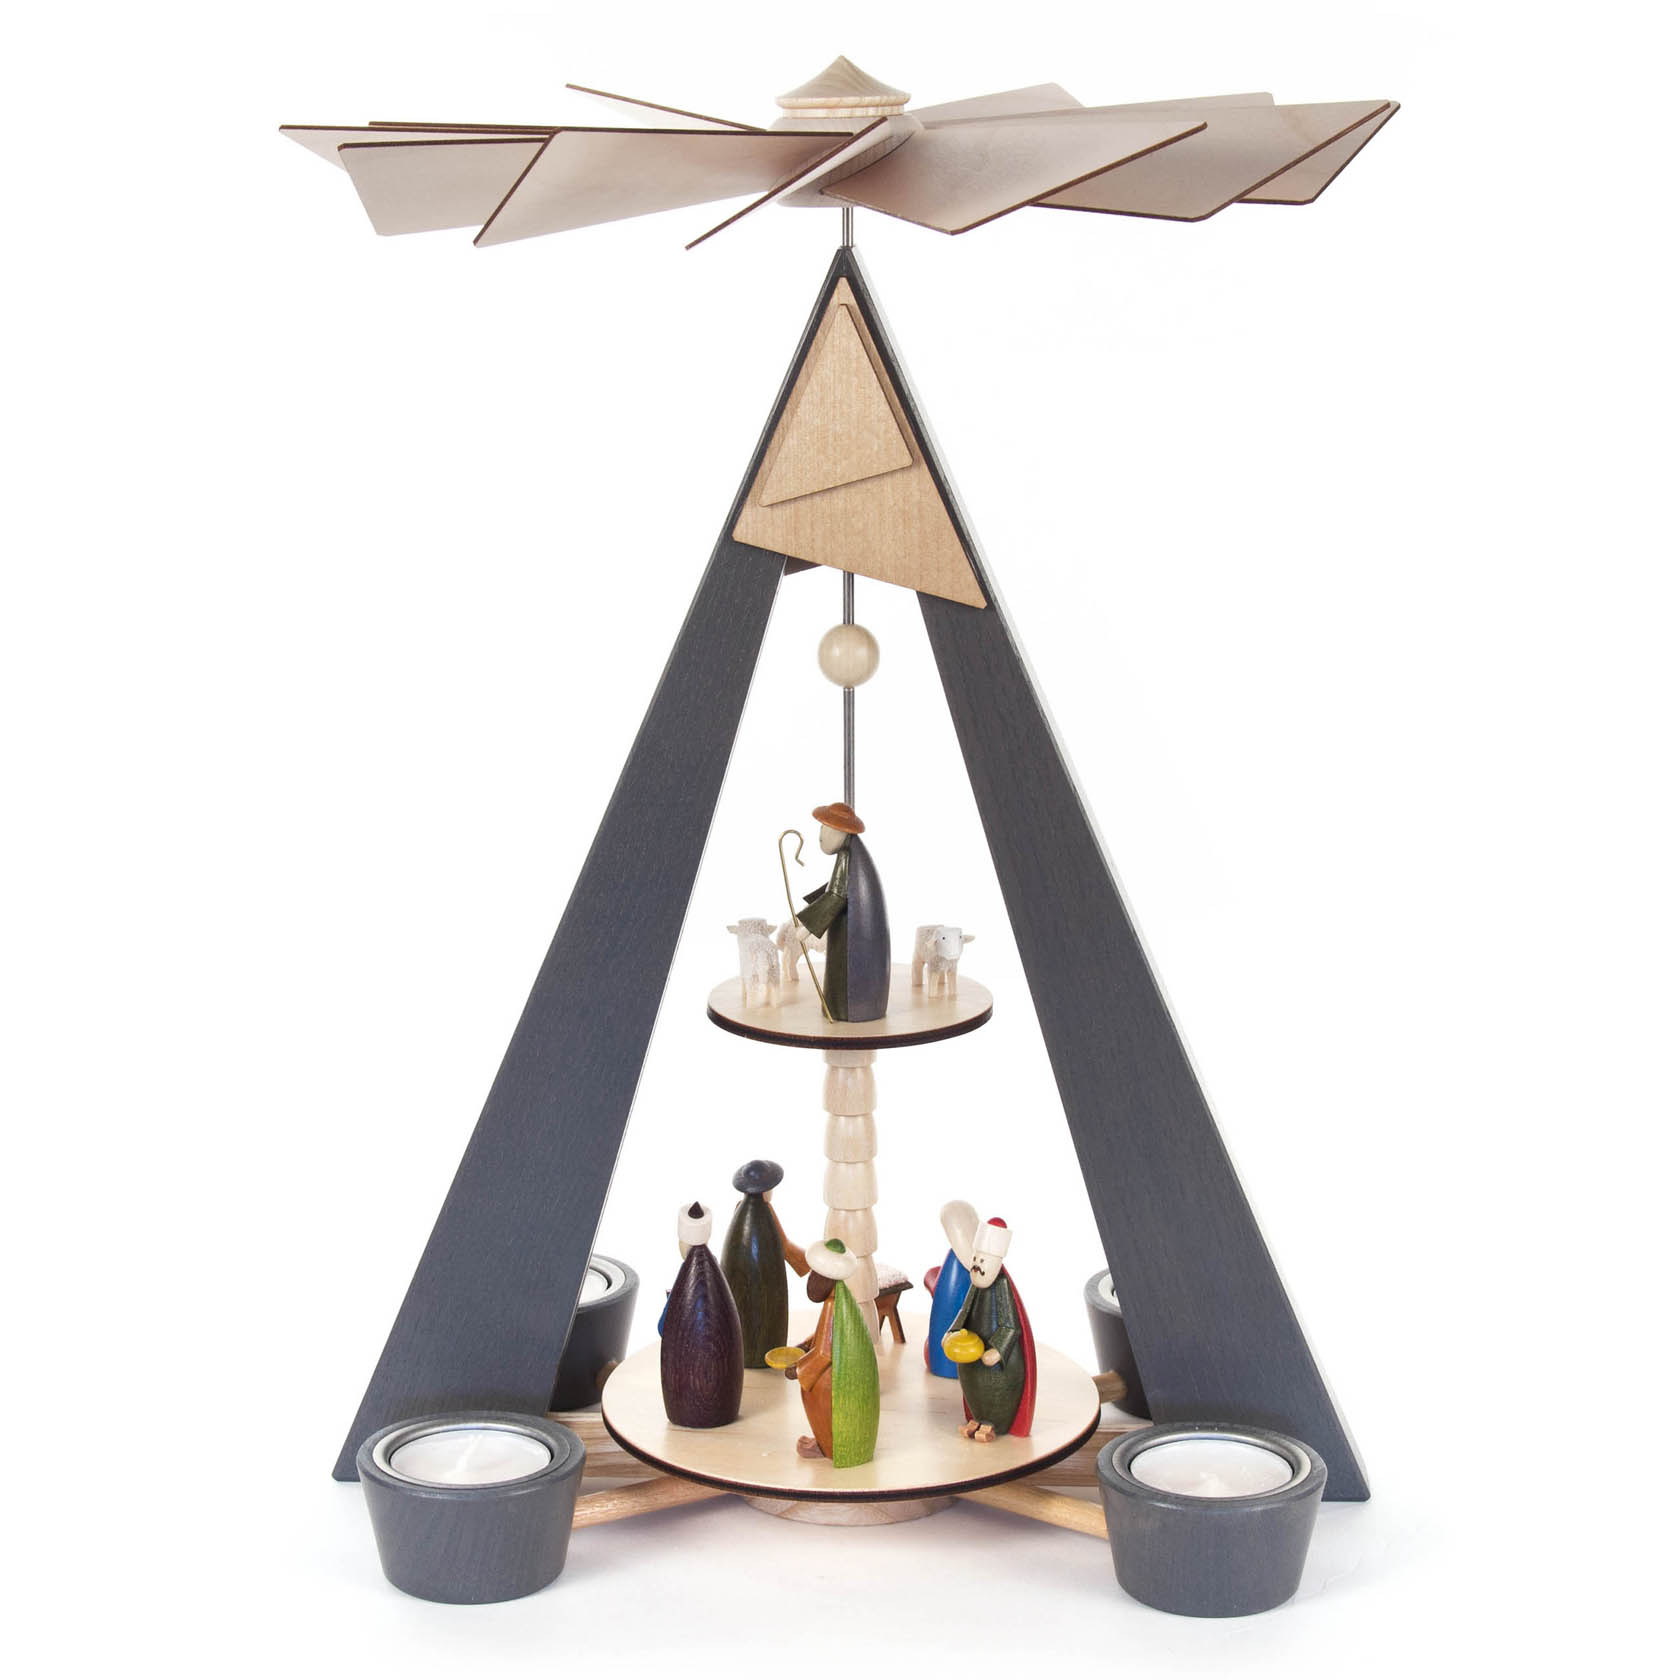 Pyramide mit Christi Geburt grau und farbigen Figuren, 2-stöckig, für Teelichte